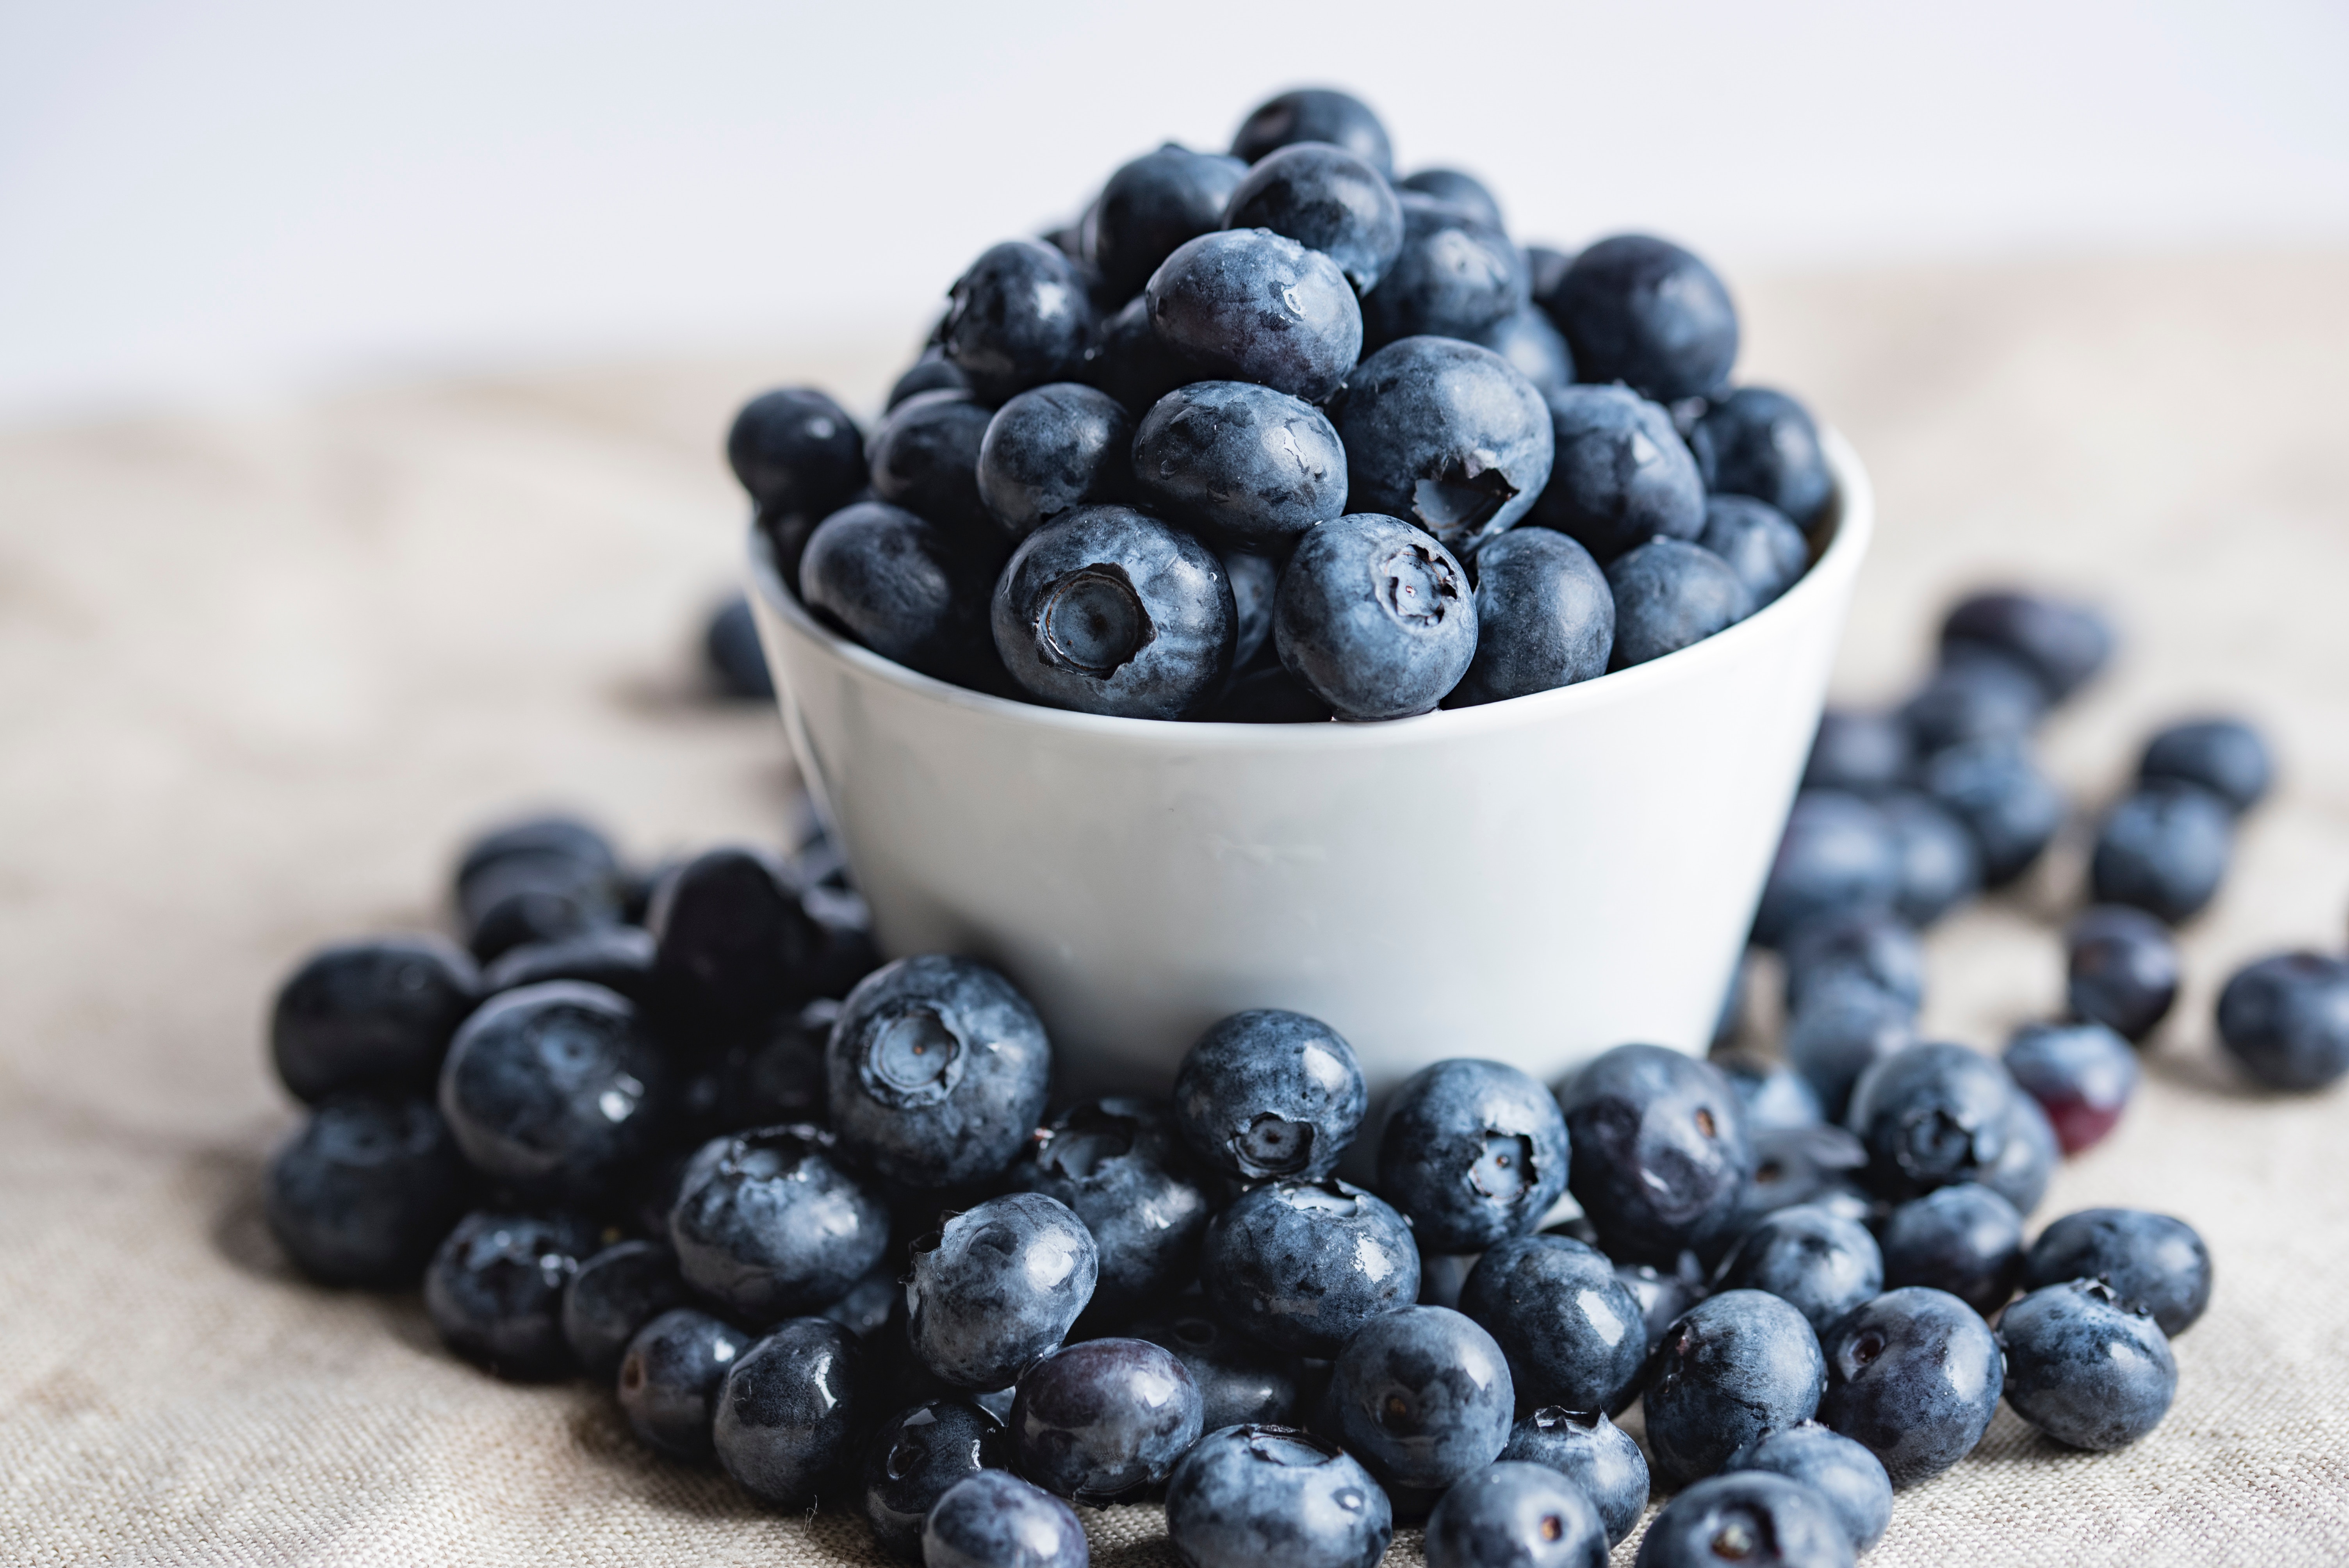 Blueberries. Photo by Joanna Kosinska on Unsplash